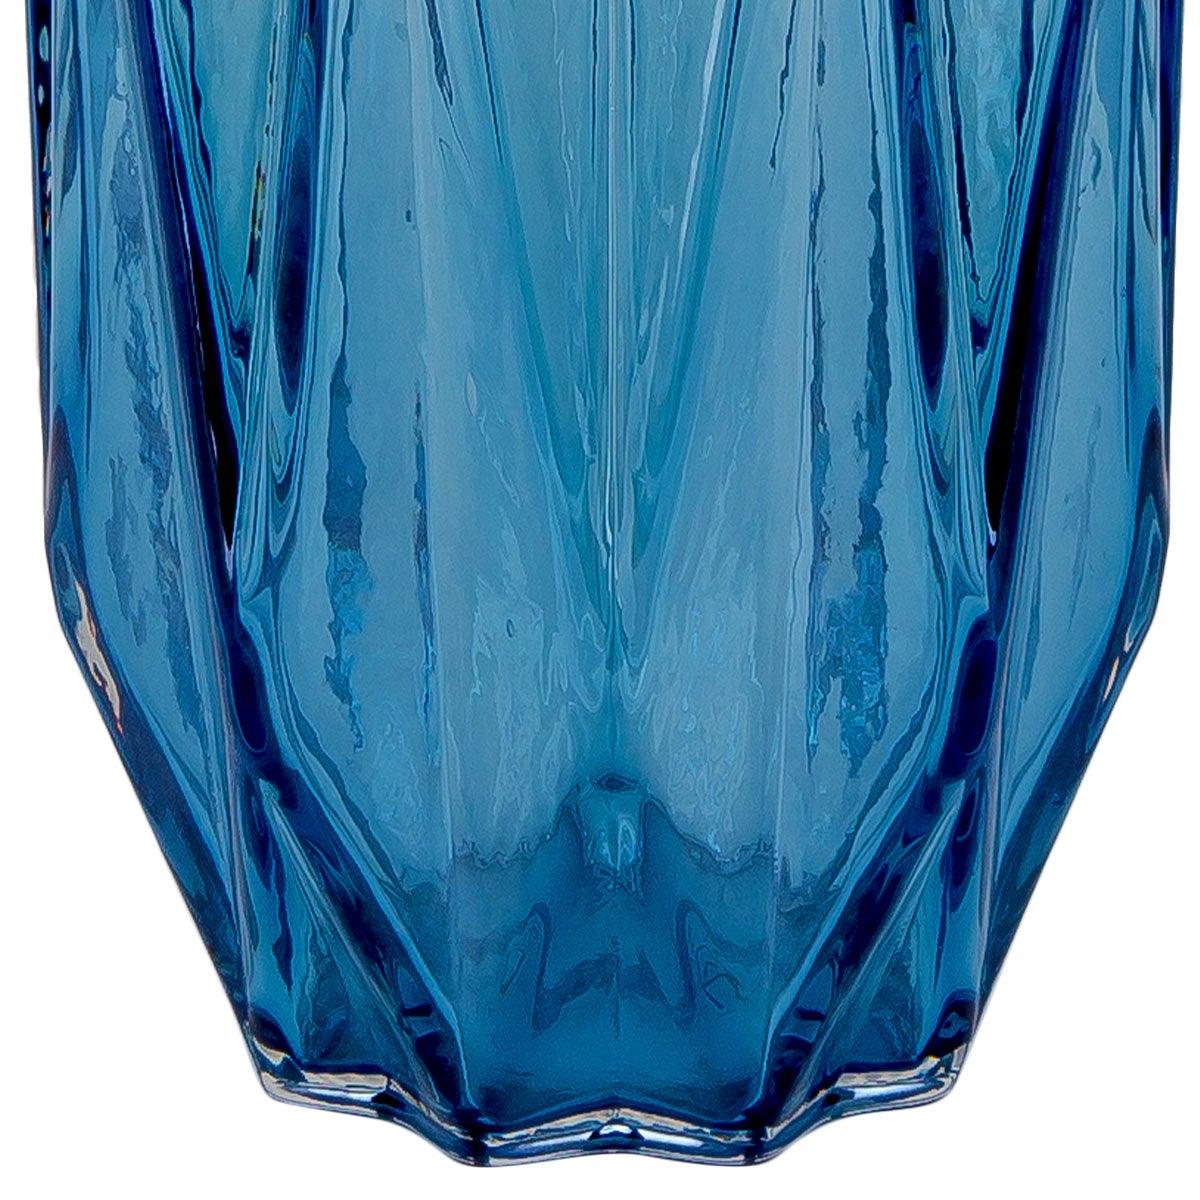 Sinatra Blue Vase Large